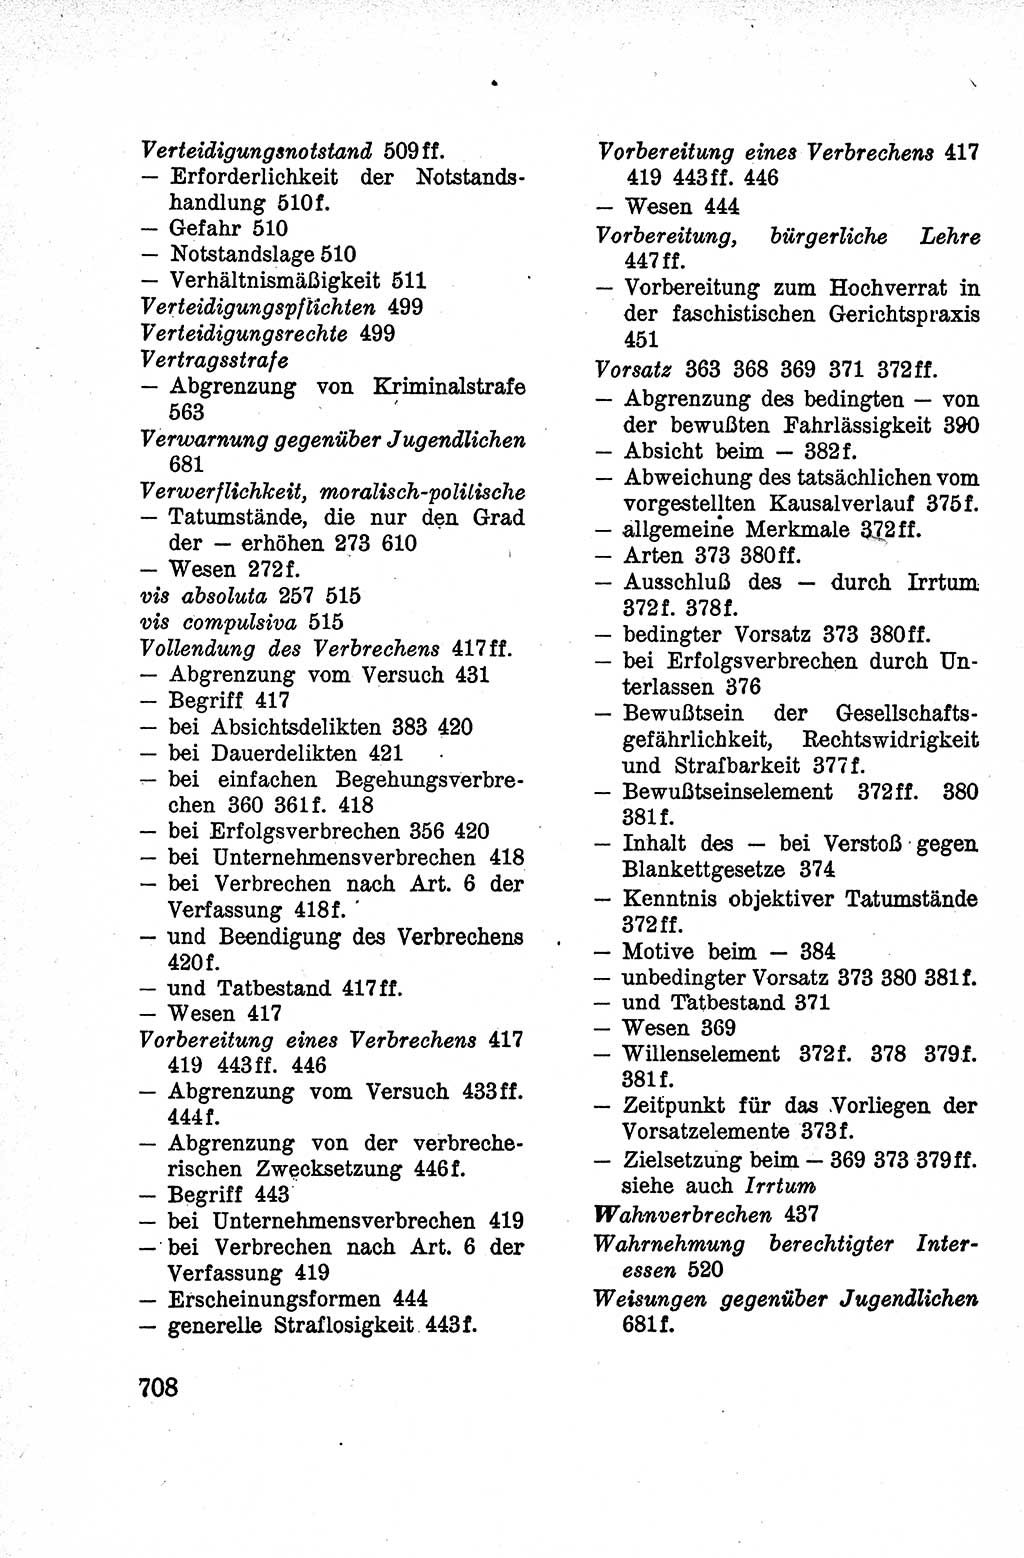 Lehrbuch des Strafrechts der Deutschen Demokratischen Republik (DDR), Allgemeiner Teil 1959, Seite 708 (Lb. Strafr. DDR AT 1959, S. 708)